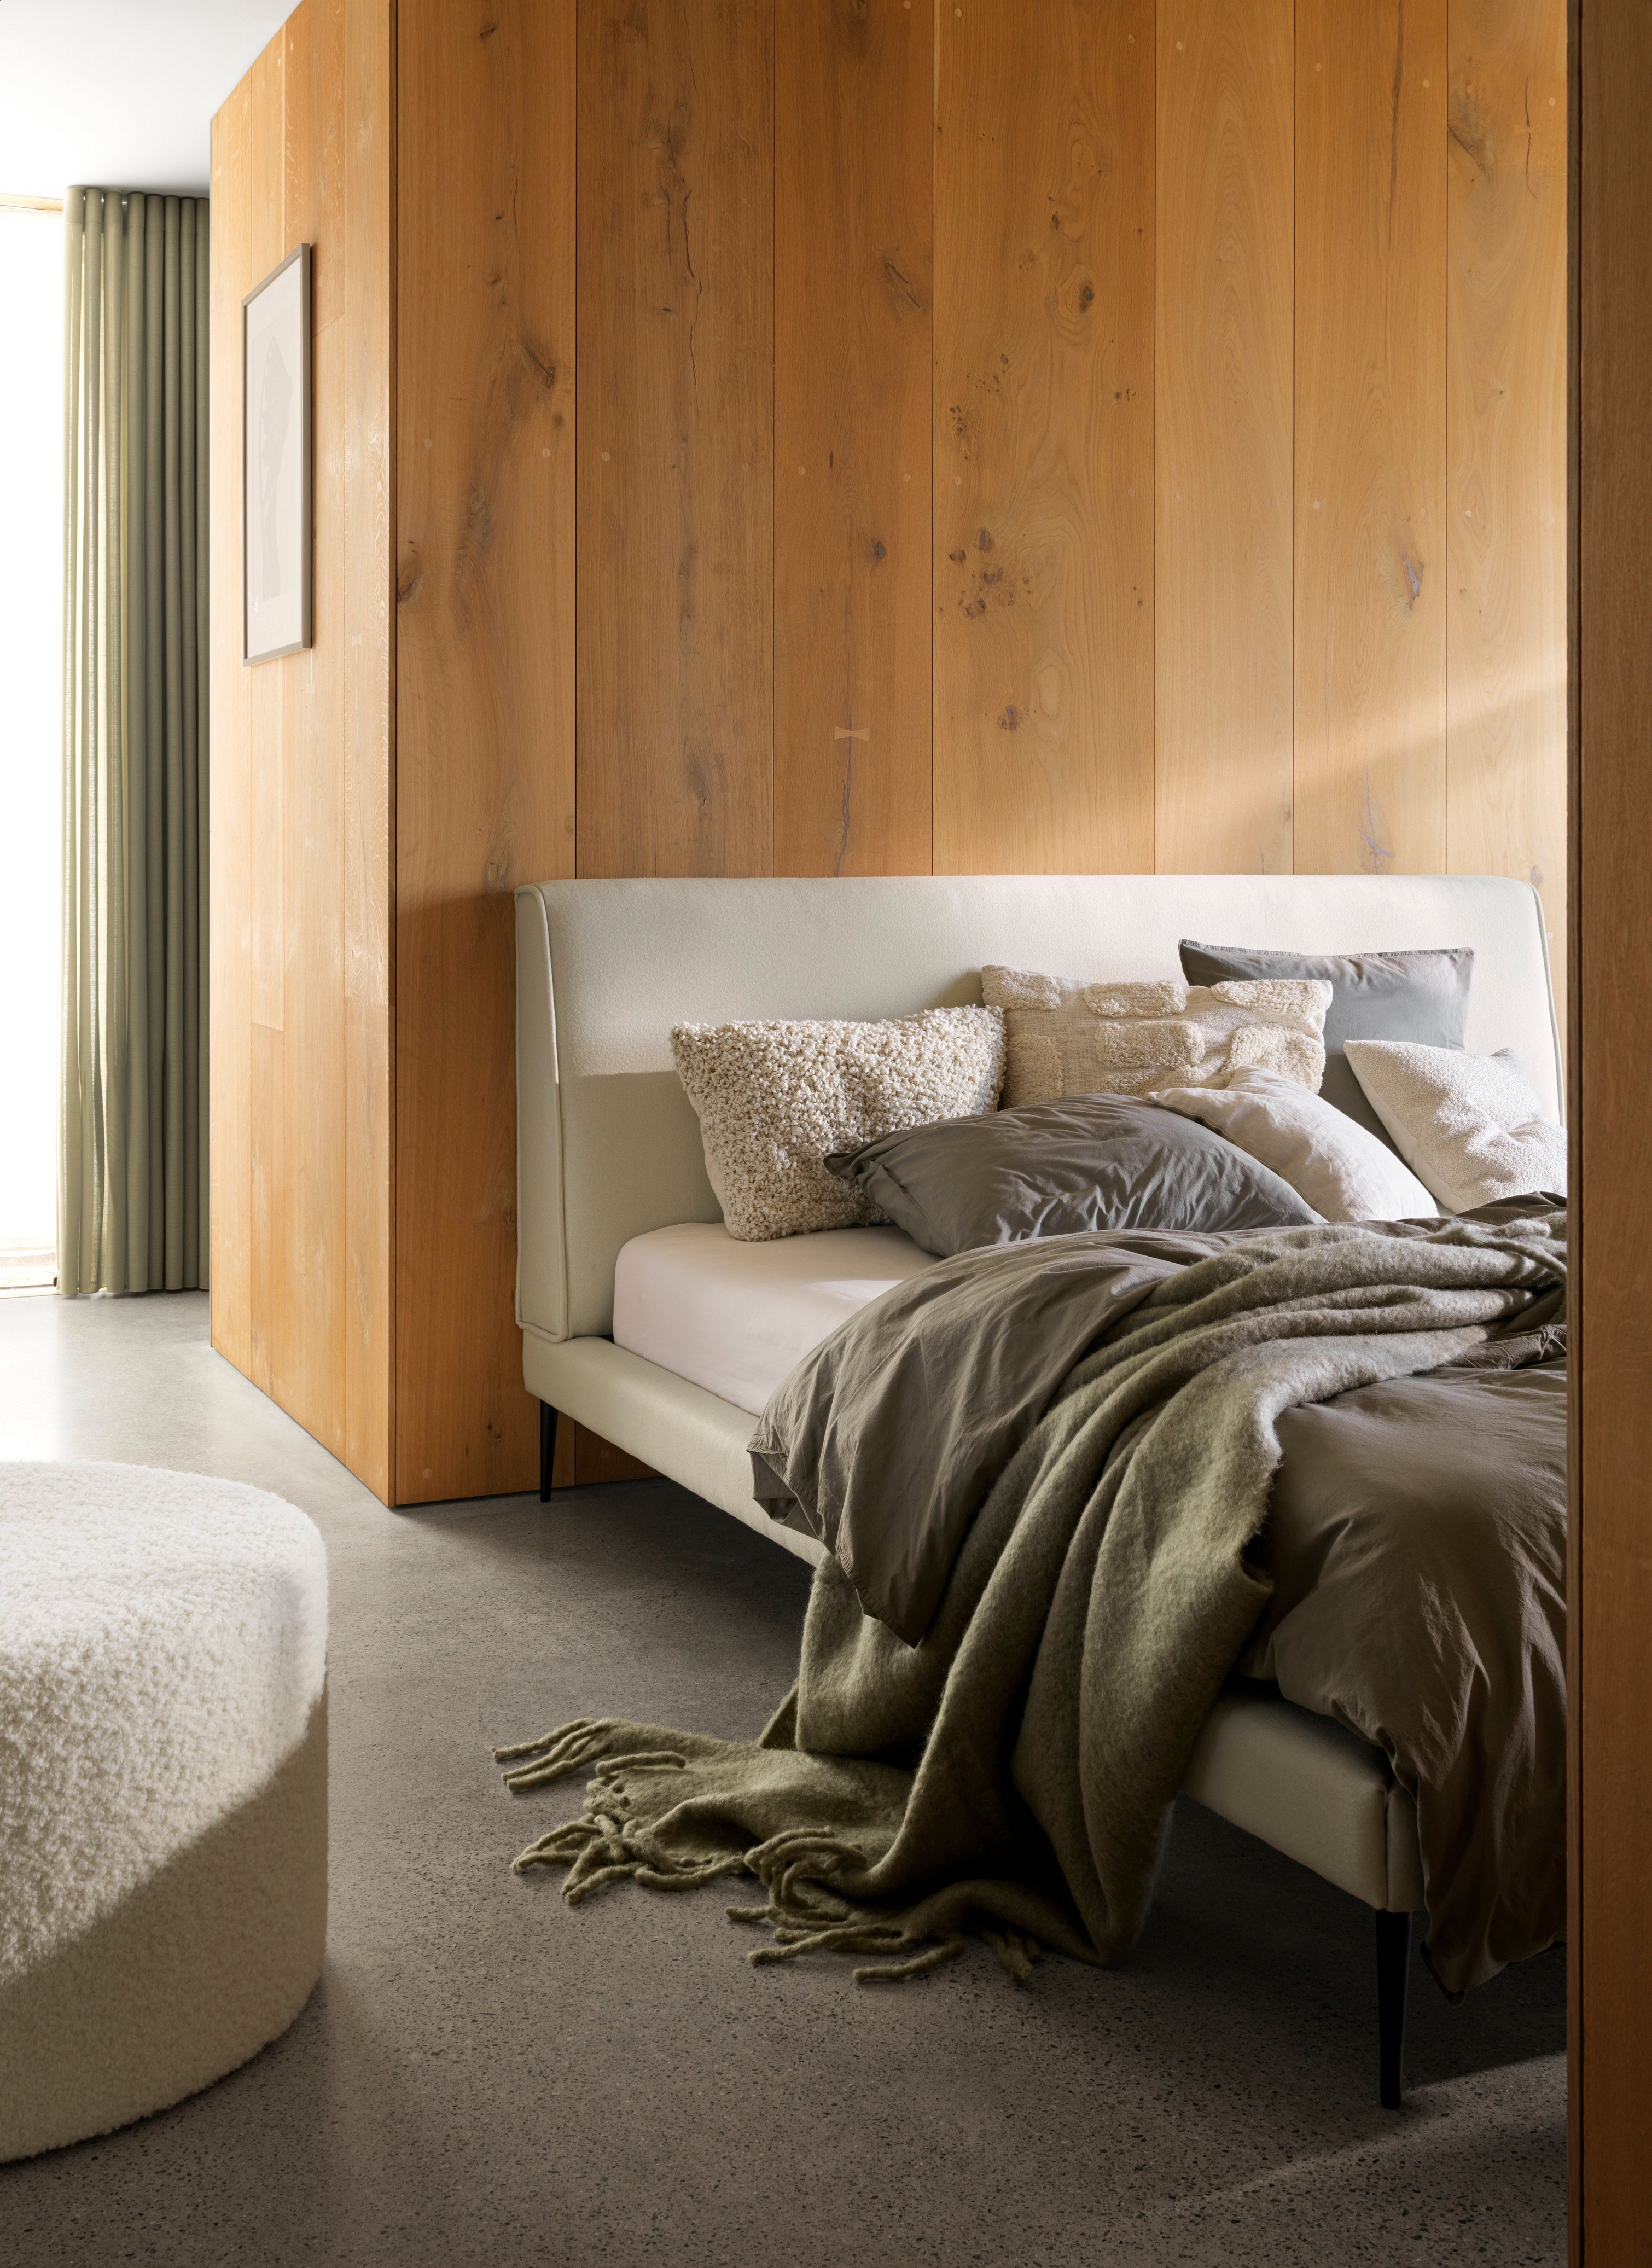 Cama aconchegante com mantas e almofadas macias numa parede de madeira e iluminação suave.